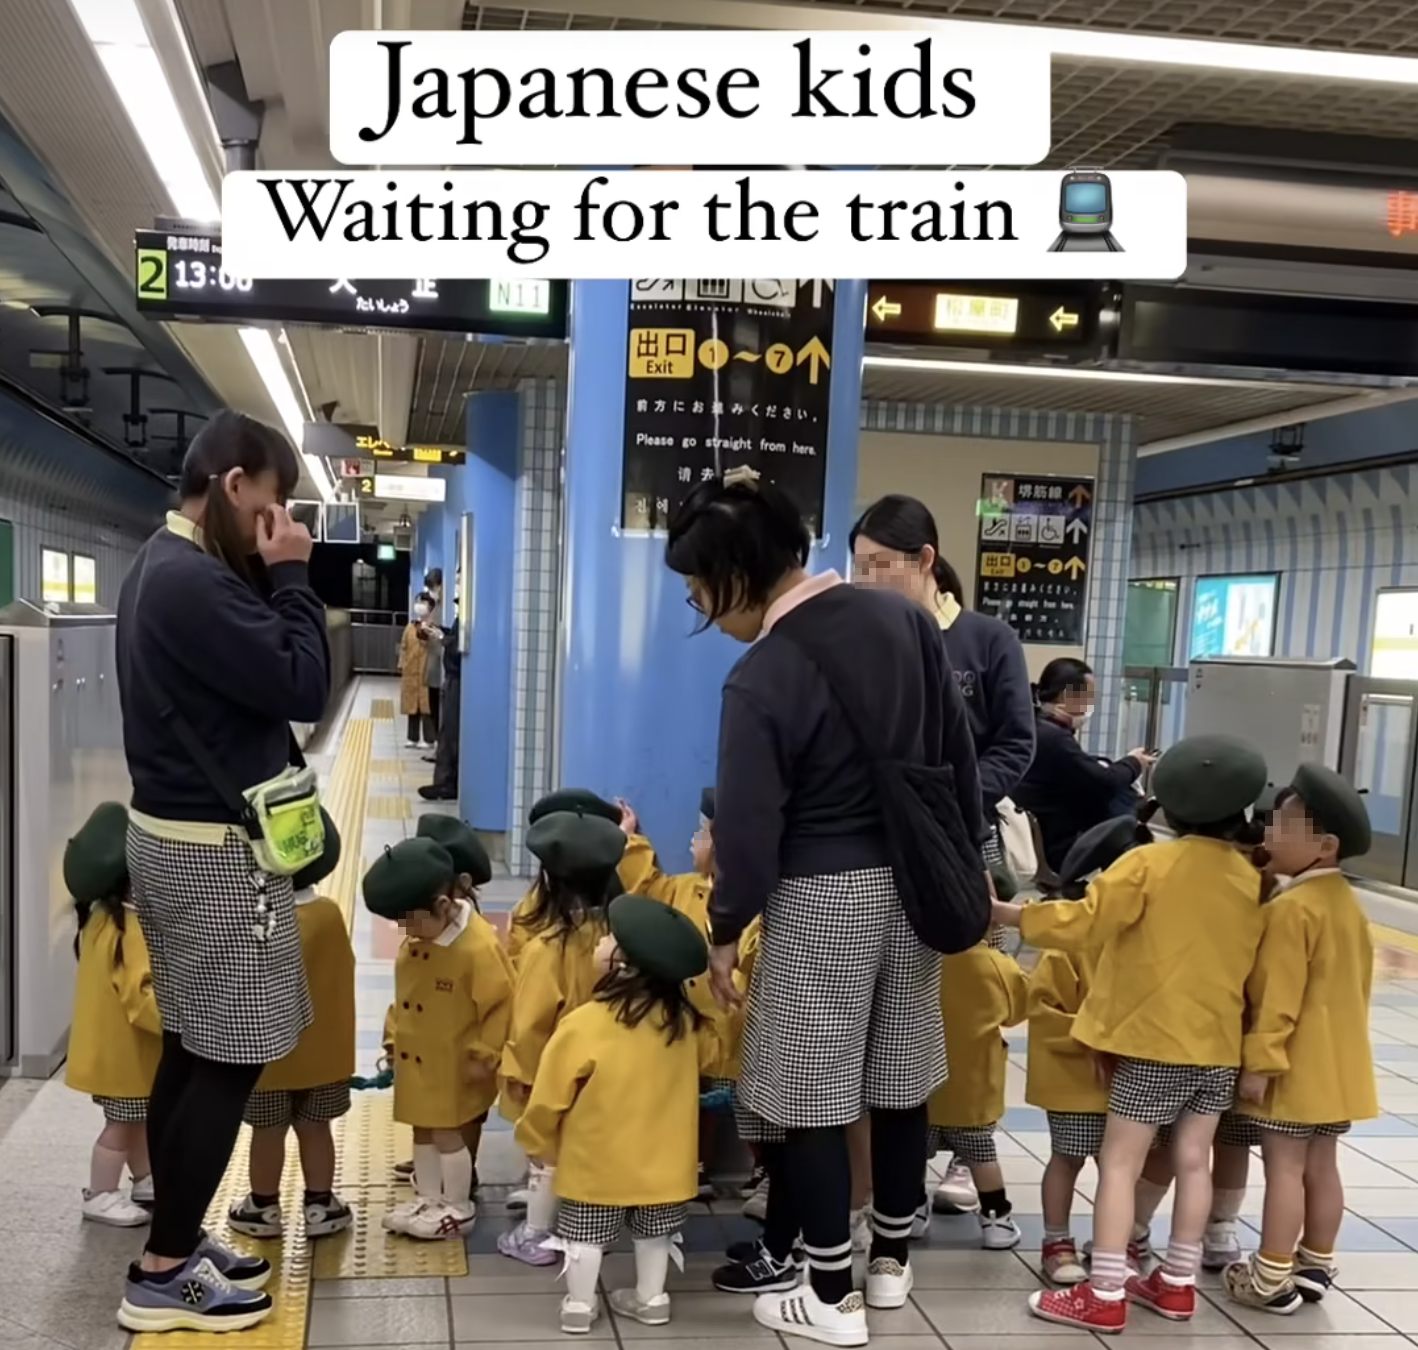 海外「なんて恵まれた国なんだ…」 園児たちの姿に日本の凄さを見出す海外の人々